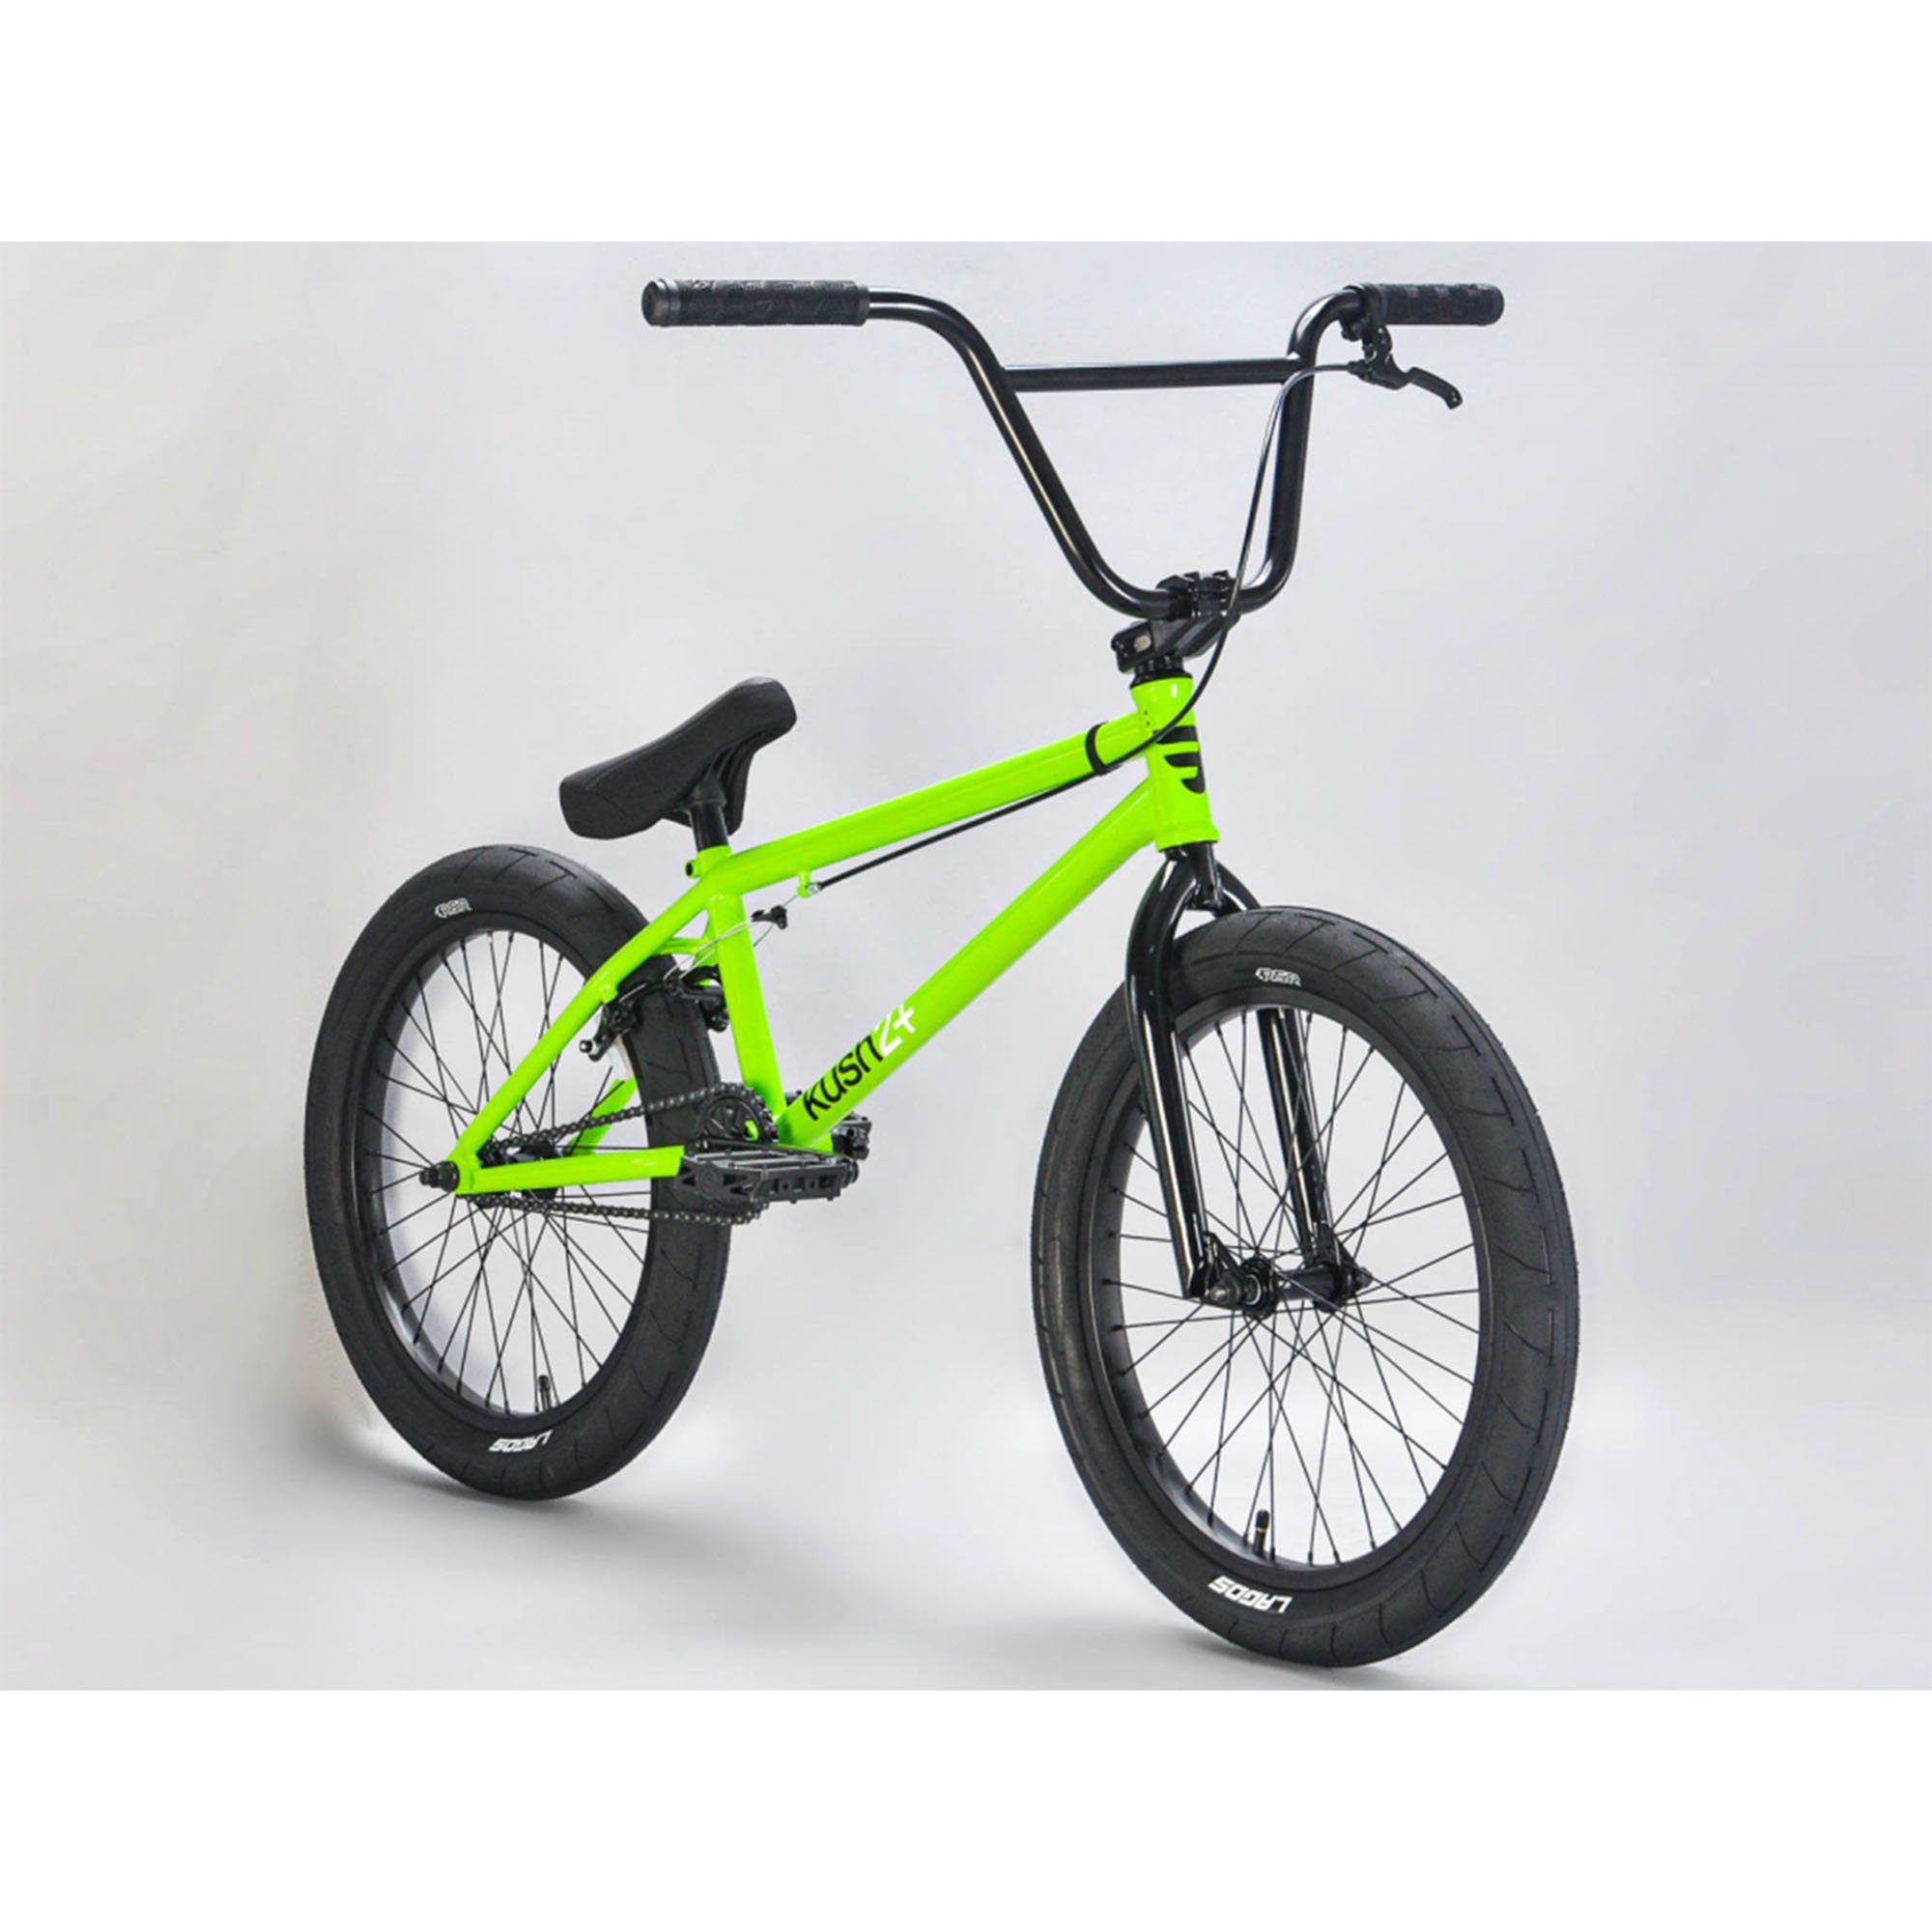 Mafiabikes Jugendfahrrad Kush 2+, 1 Gang, ohne Schaltung, Freestyle BMX Fahrrad ab 150 cm unisex Jugendliche Erwachsene Bike hulk green